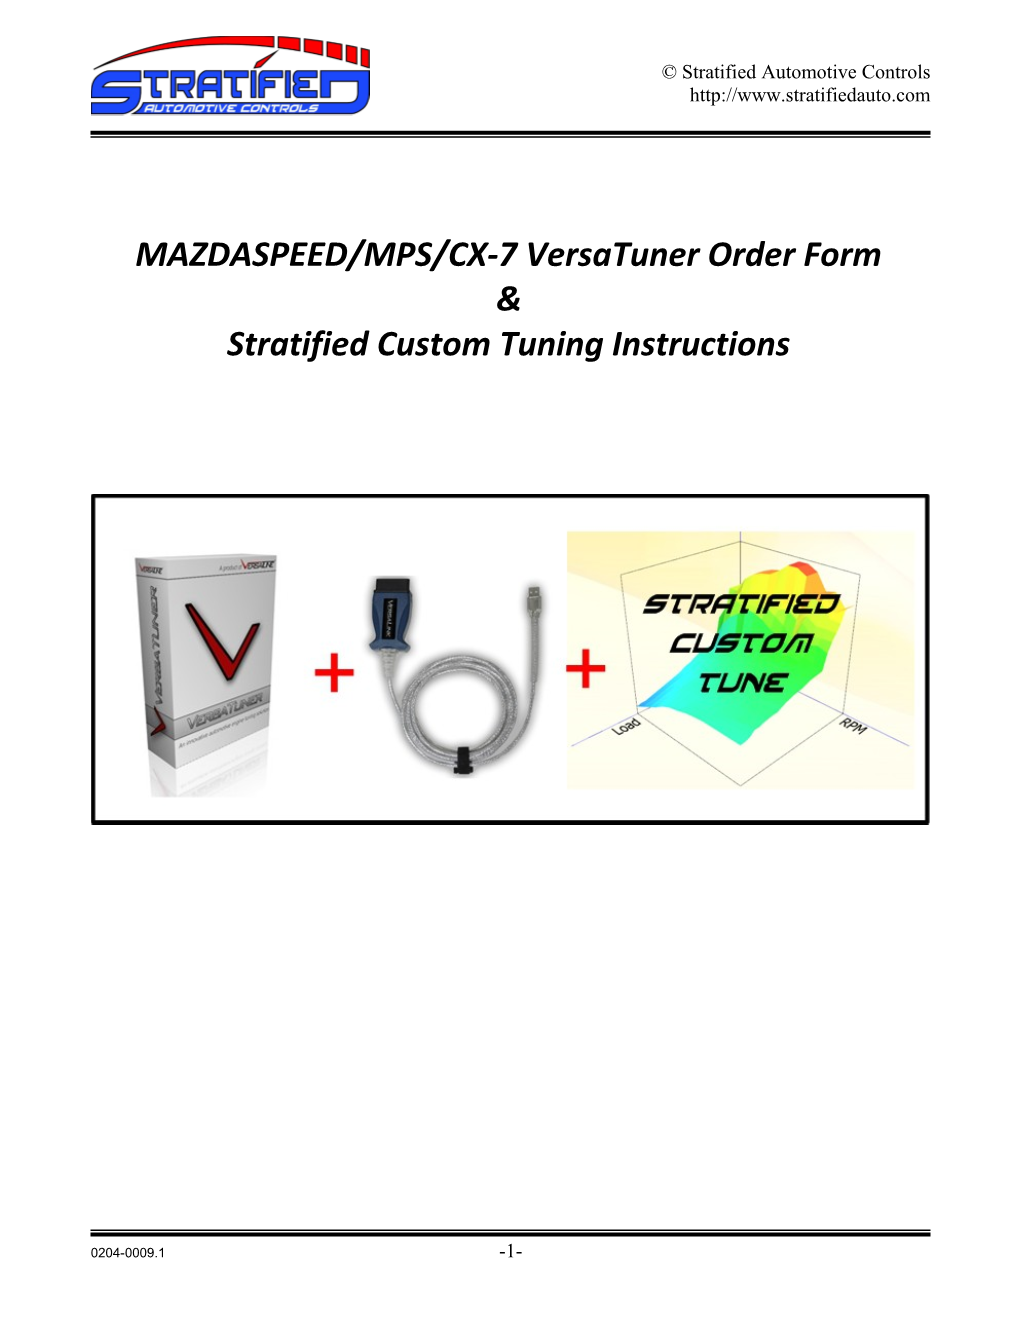 MAZDASPEED/MPS/CX-7Versatuner Order Form